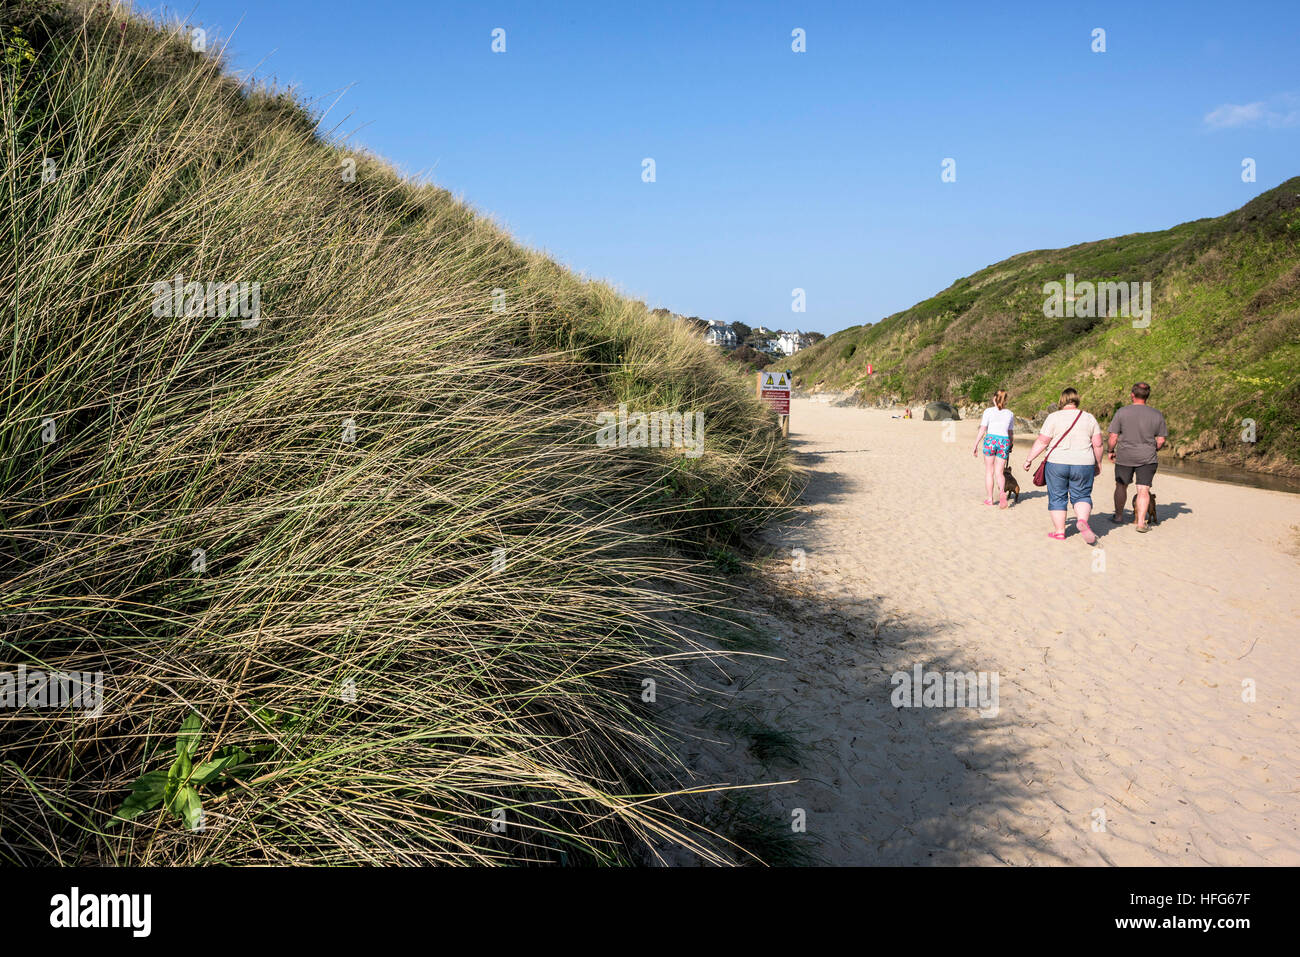 Quelques vacanciers dunes plantées d'ammophile surplombant la plage de Crantock primé à Newquay, Cornwall, England, UK. Banque D'Images